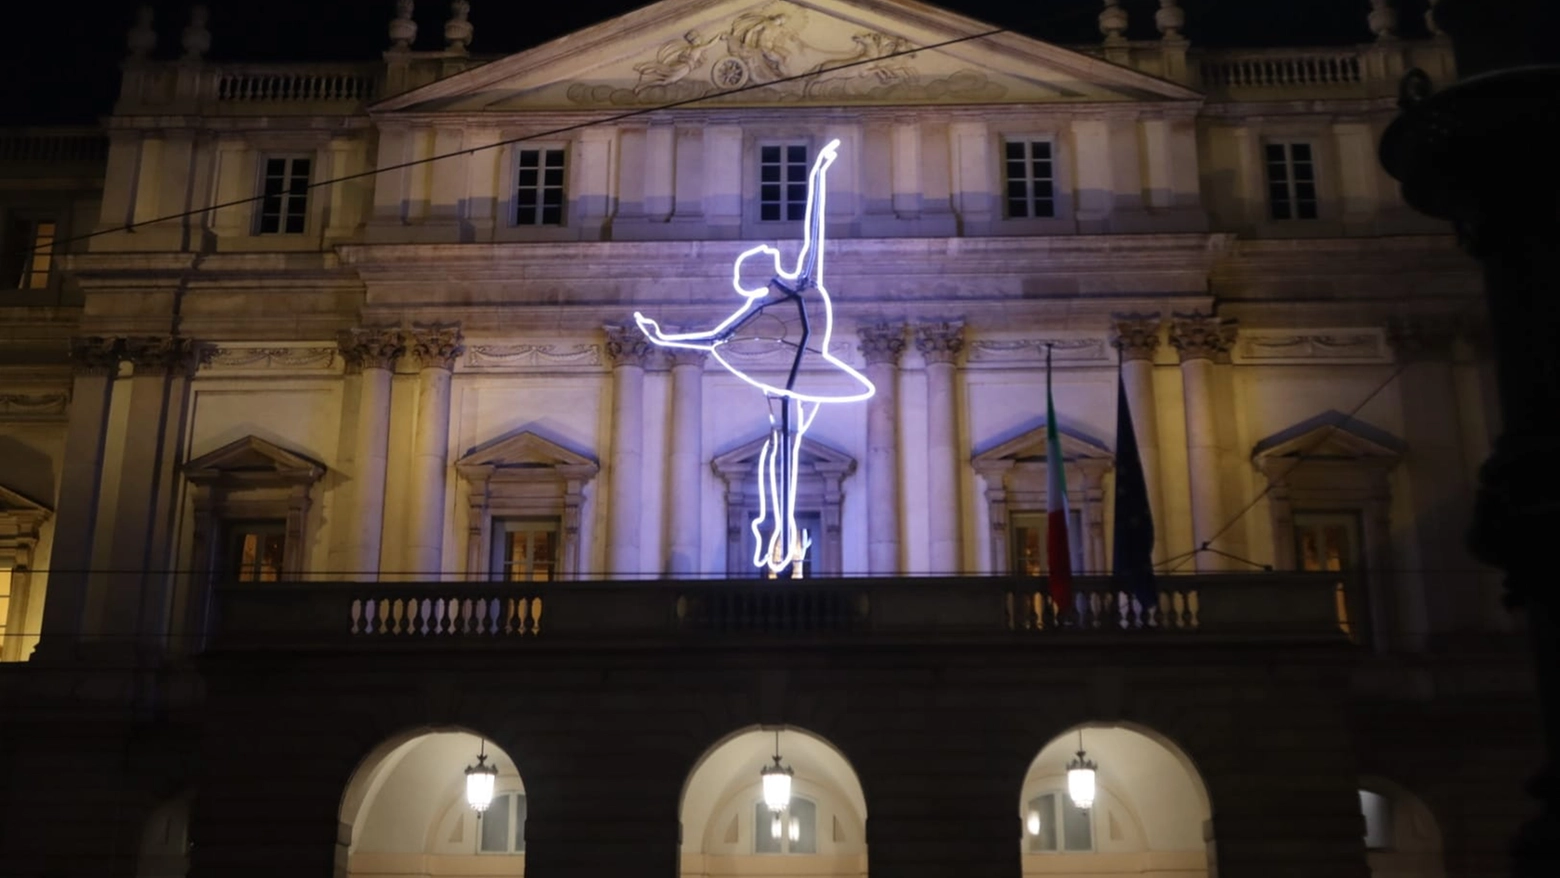 L'installazione Big Ballerina di Angelo Bonello sulla facciata della Scala (Foto Salmoirago)